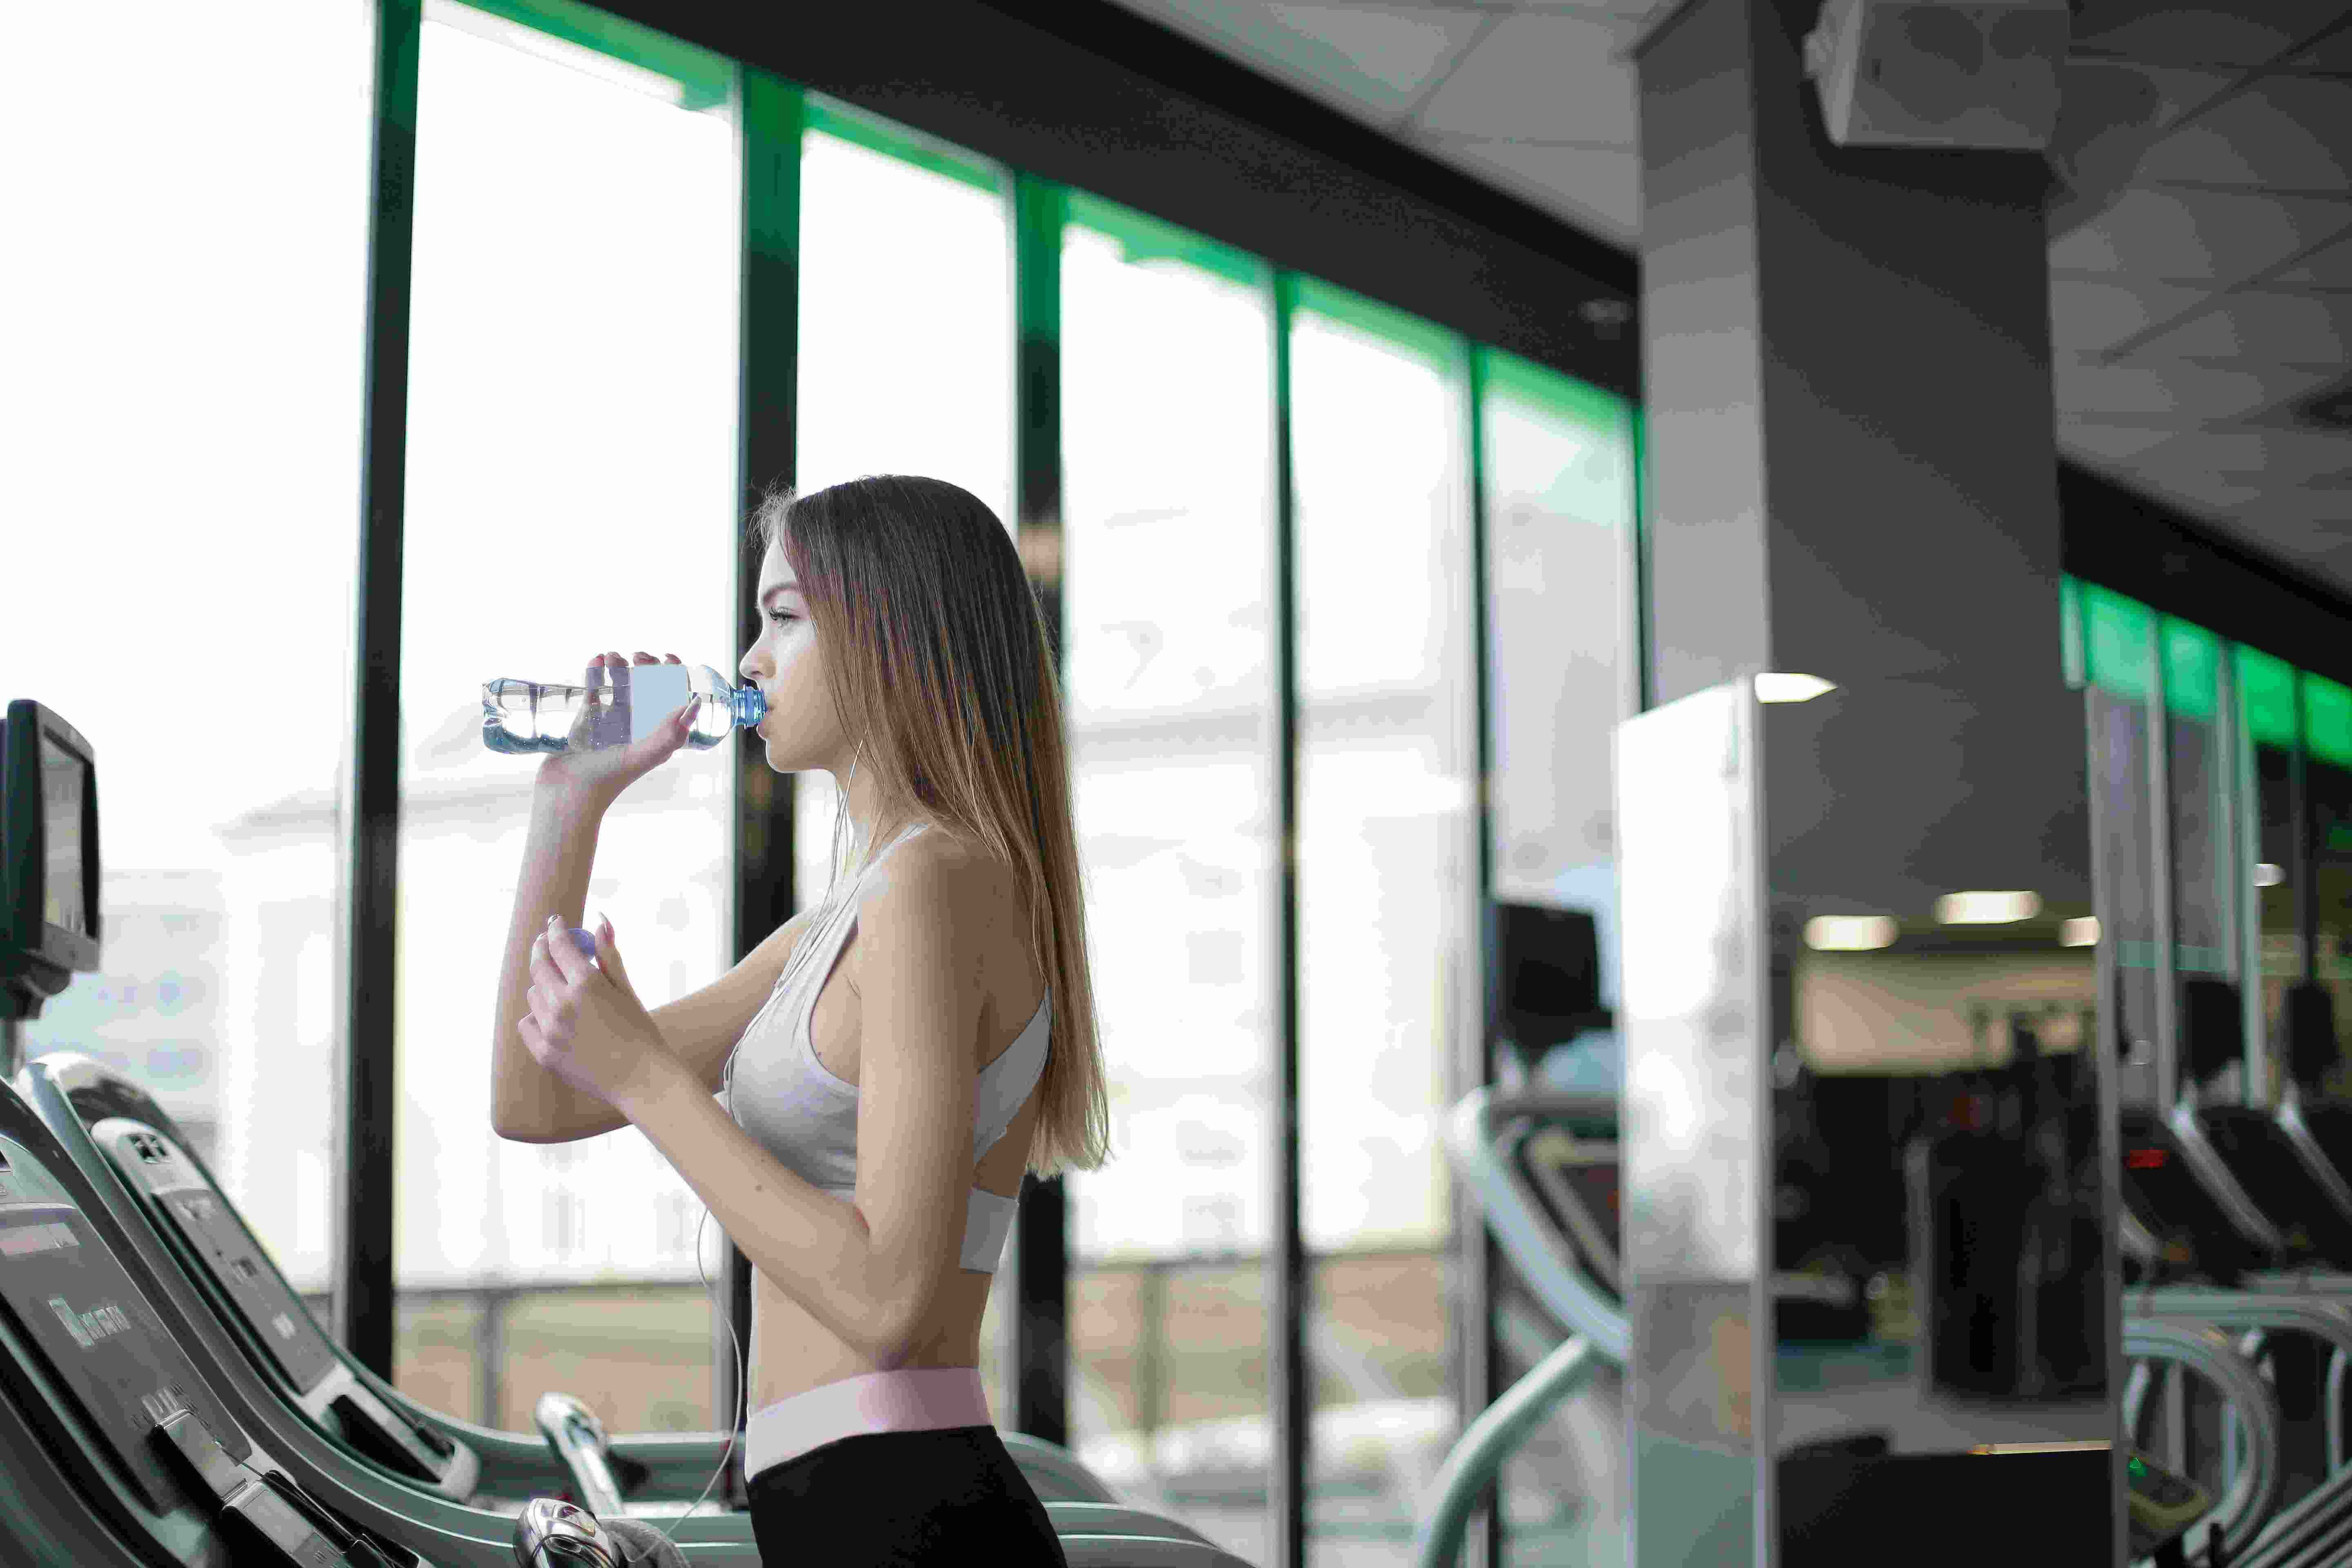 Beba bastante água para evitar sinais de desidratação na academia de ginástica